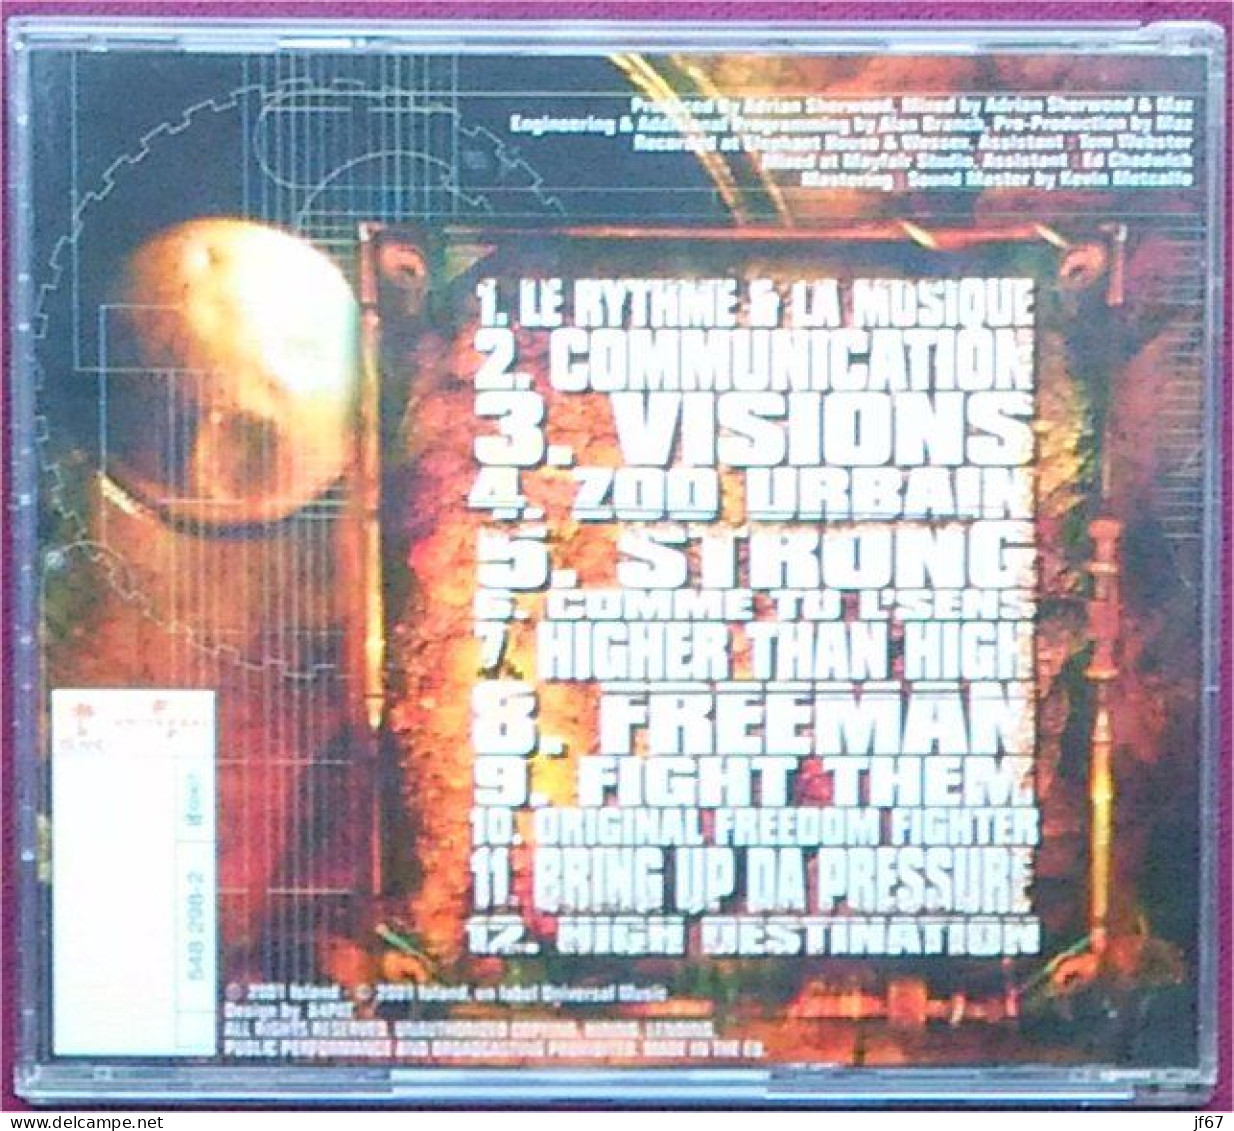 Elephant System (CD) - Otros & Sin Clasificación